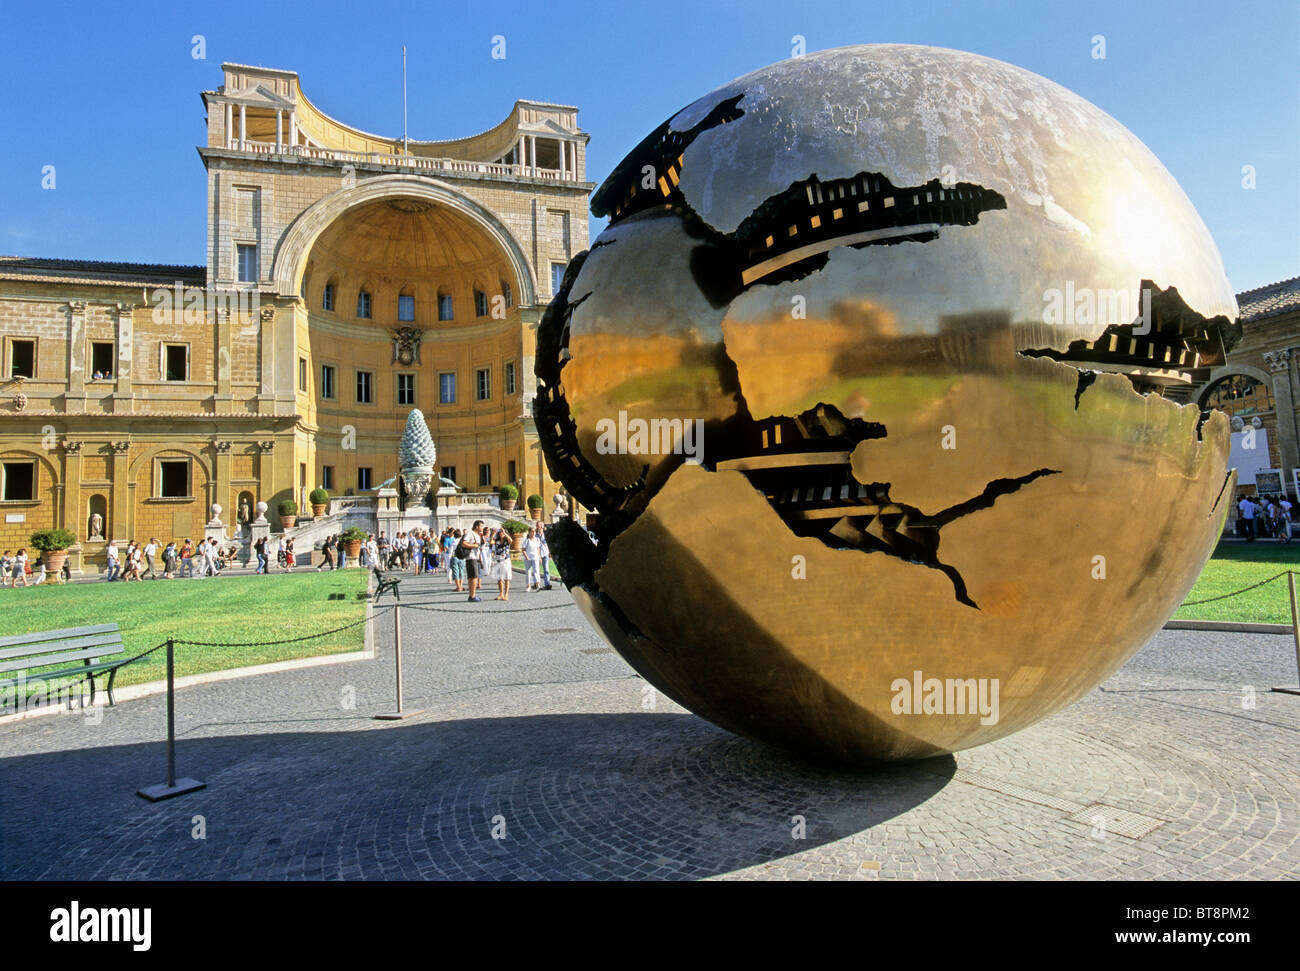 Mappa Monda Globe, il Palazzetto del Belvedere con il gigante pigna, Cortile della Pigna museum, Musei Vaticani, Città del Vaticano Foto Stock